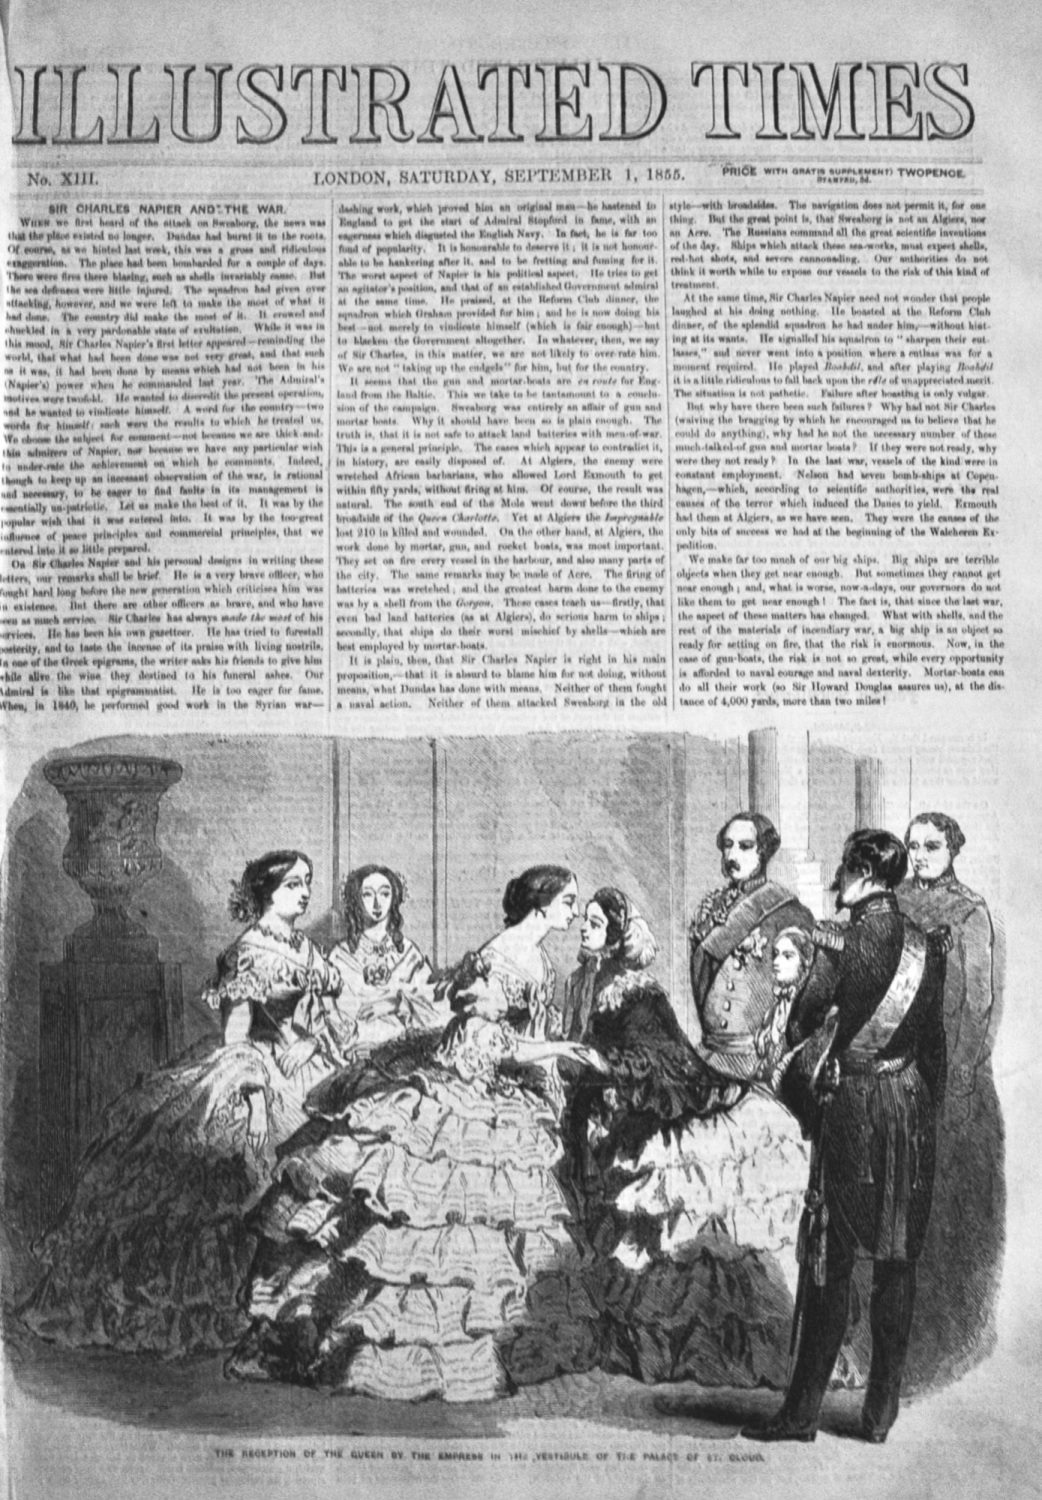 Illustrated News, September 1st, 1855.